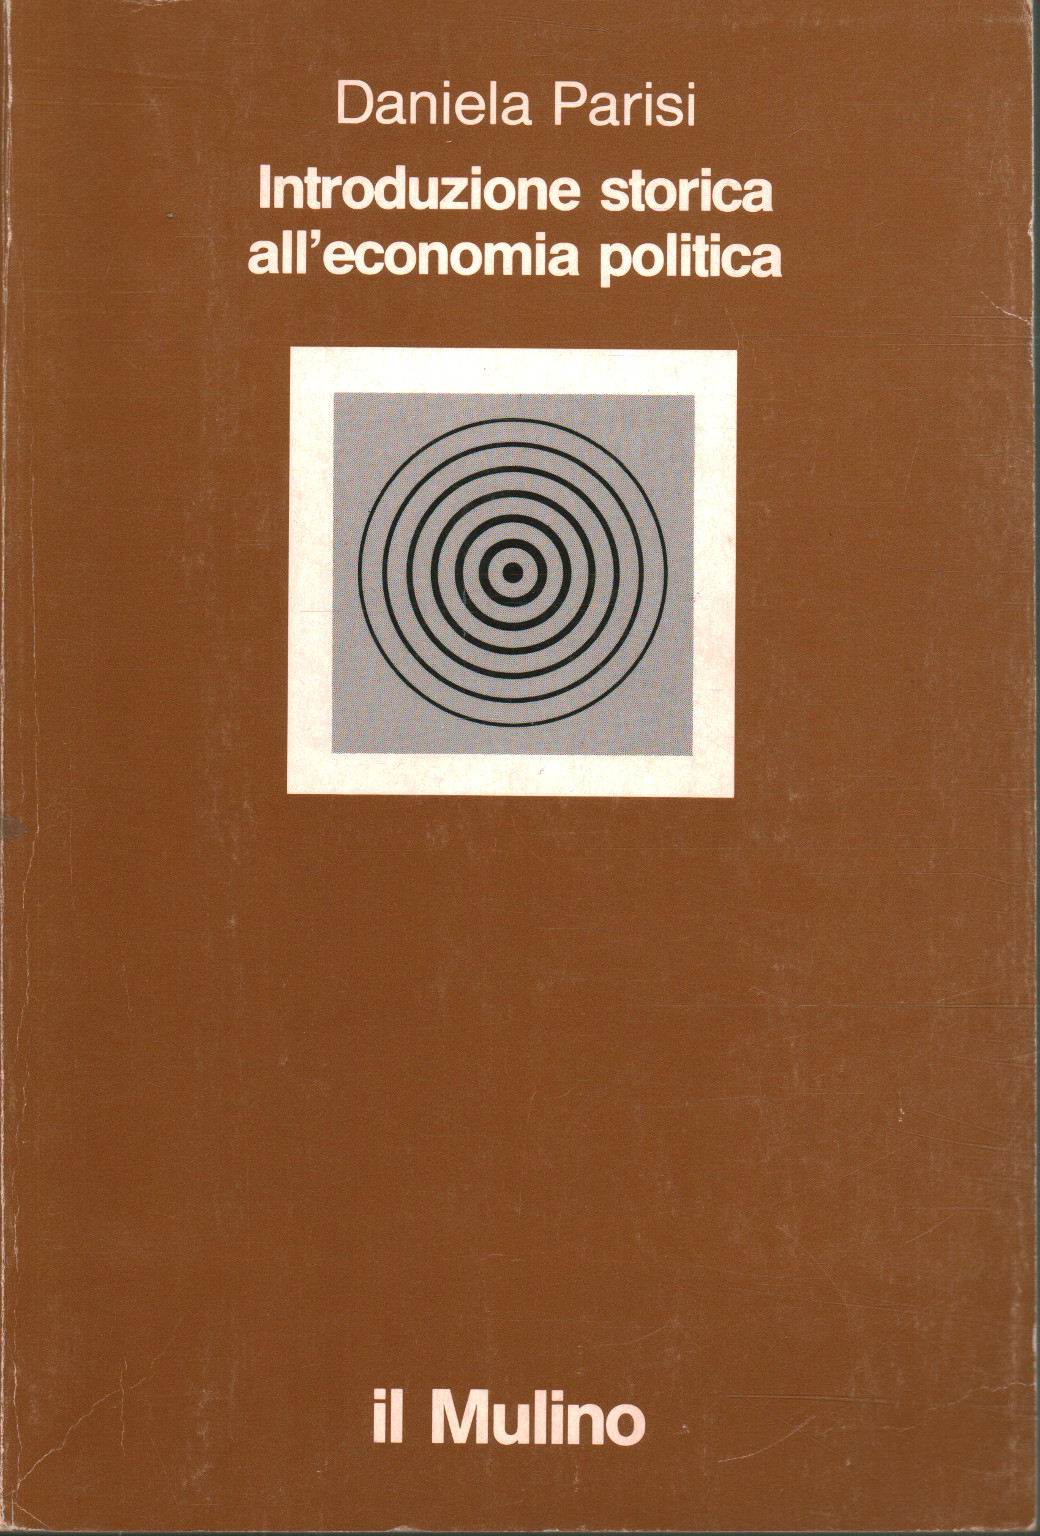 Historische Einführung in die politische Ökonomie, Daniela Parisi